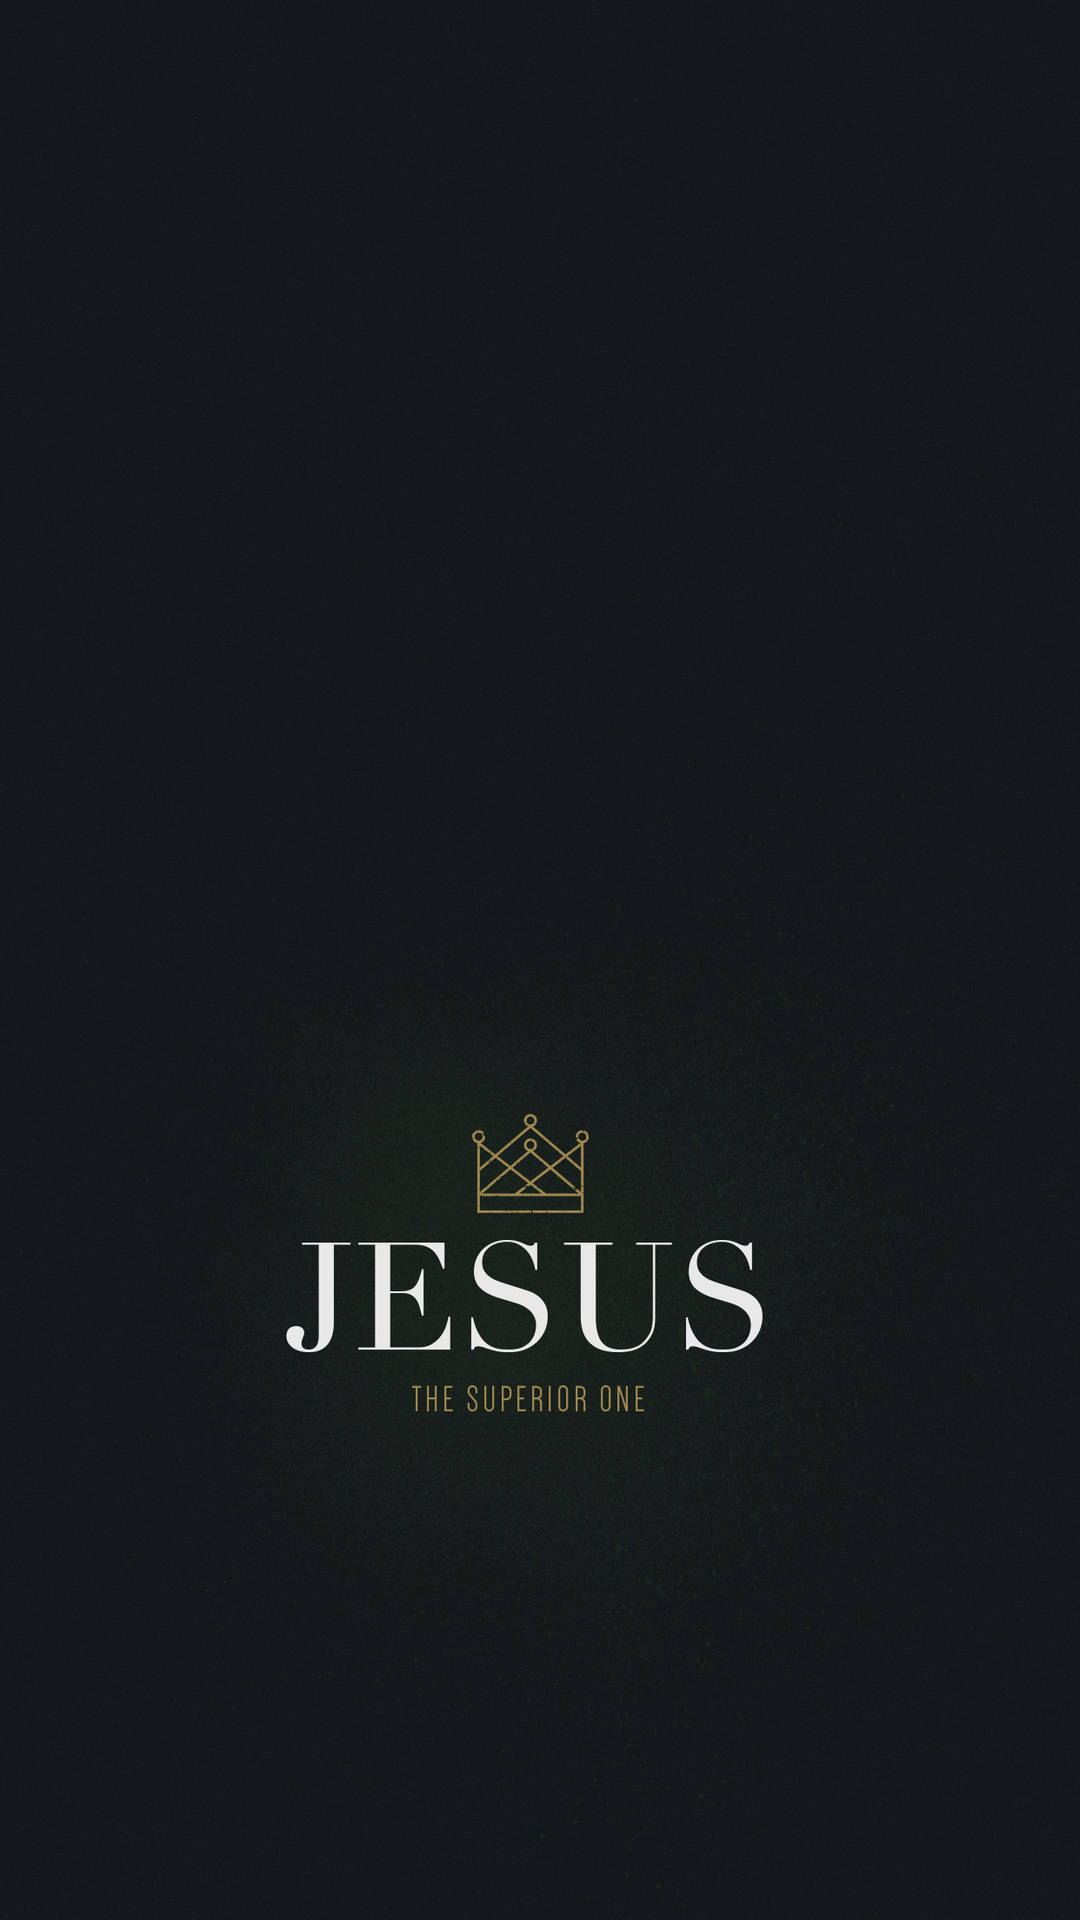 Jesus 1242X2208 wallpaper